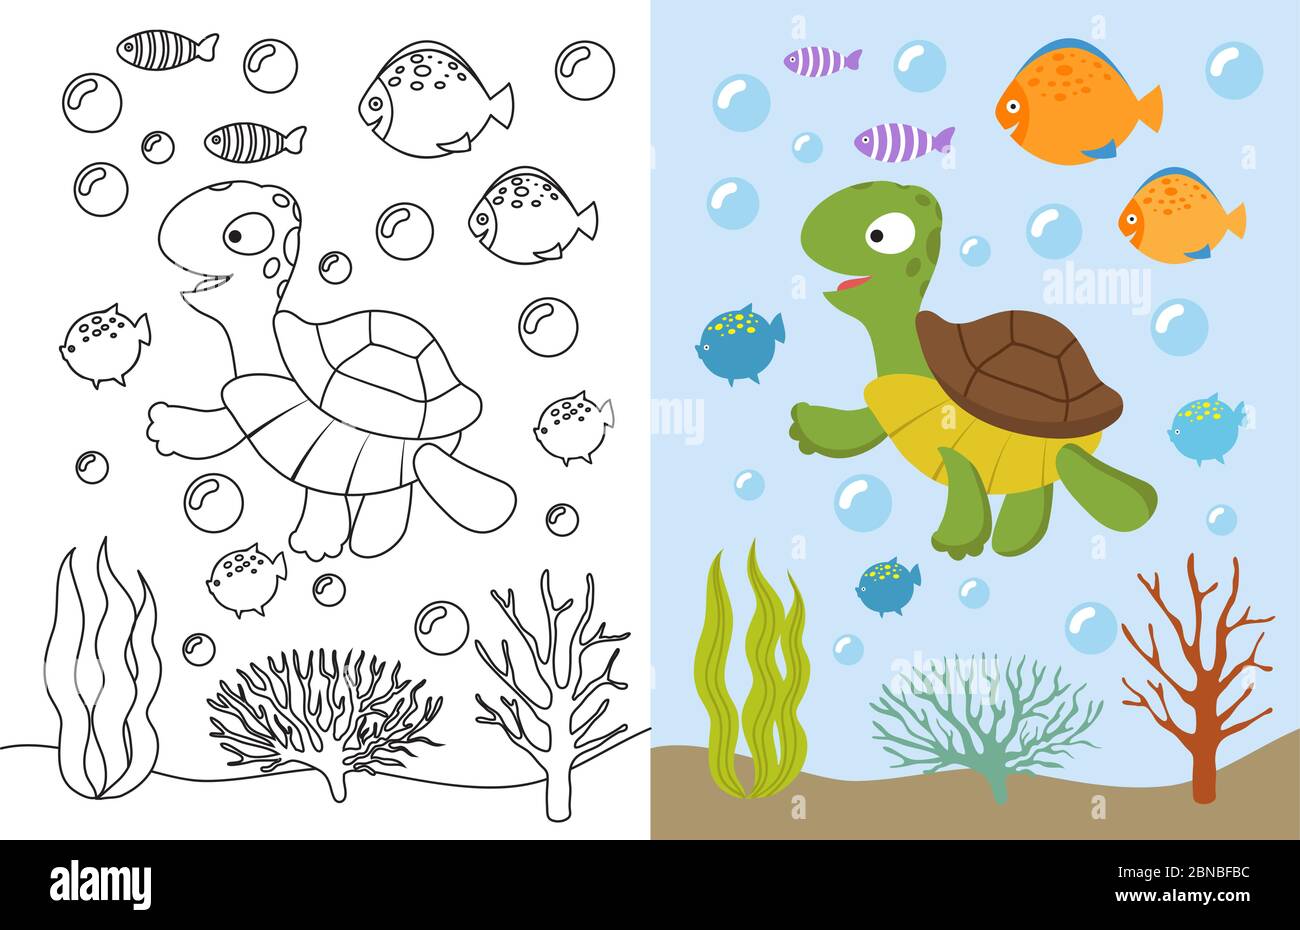 Schildkröte Malvorlagen. Cartoon Schwimmen Meerestiere unter Wasser. Vektor-Illustration für Kinder zum ausmalen Buch. Unterwassermeer, Schildkröten Tier und Fisch Stock Vektor